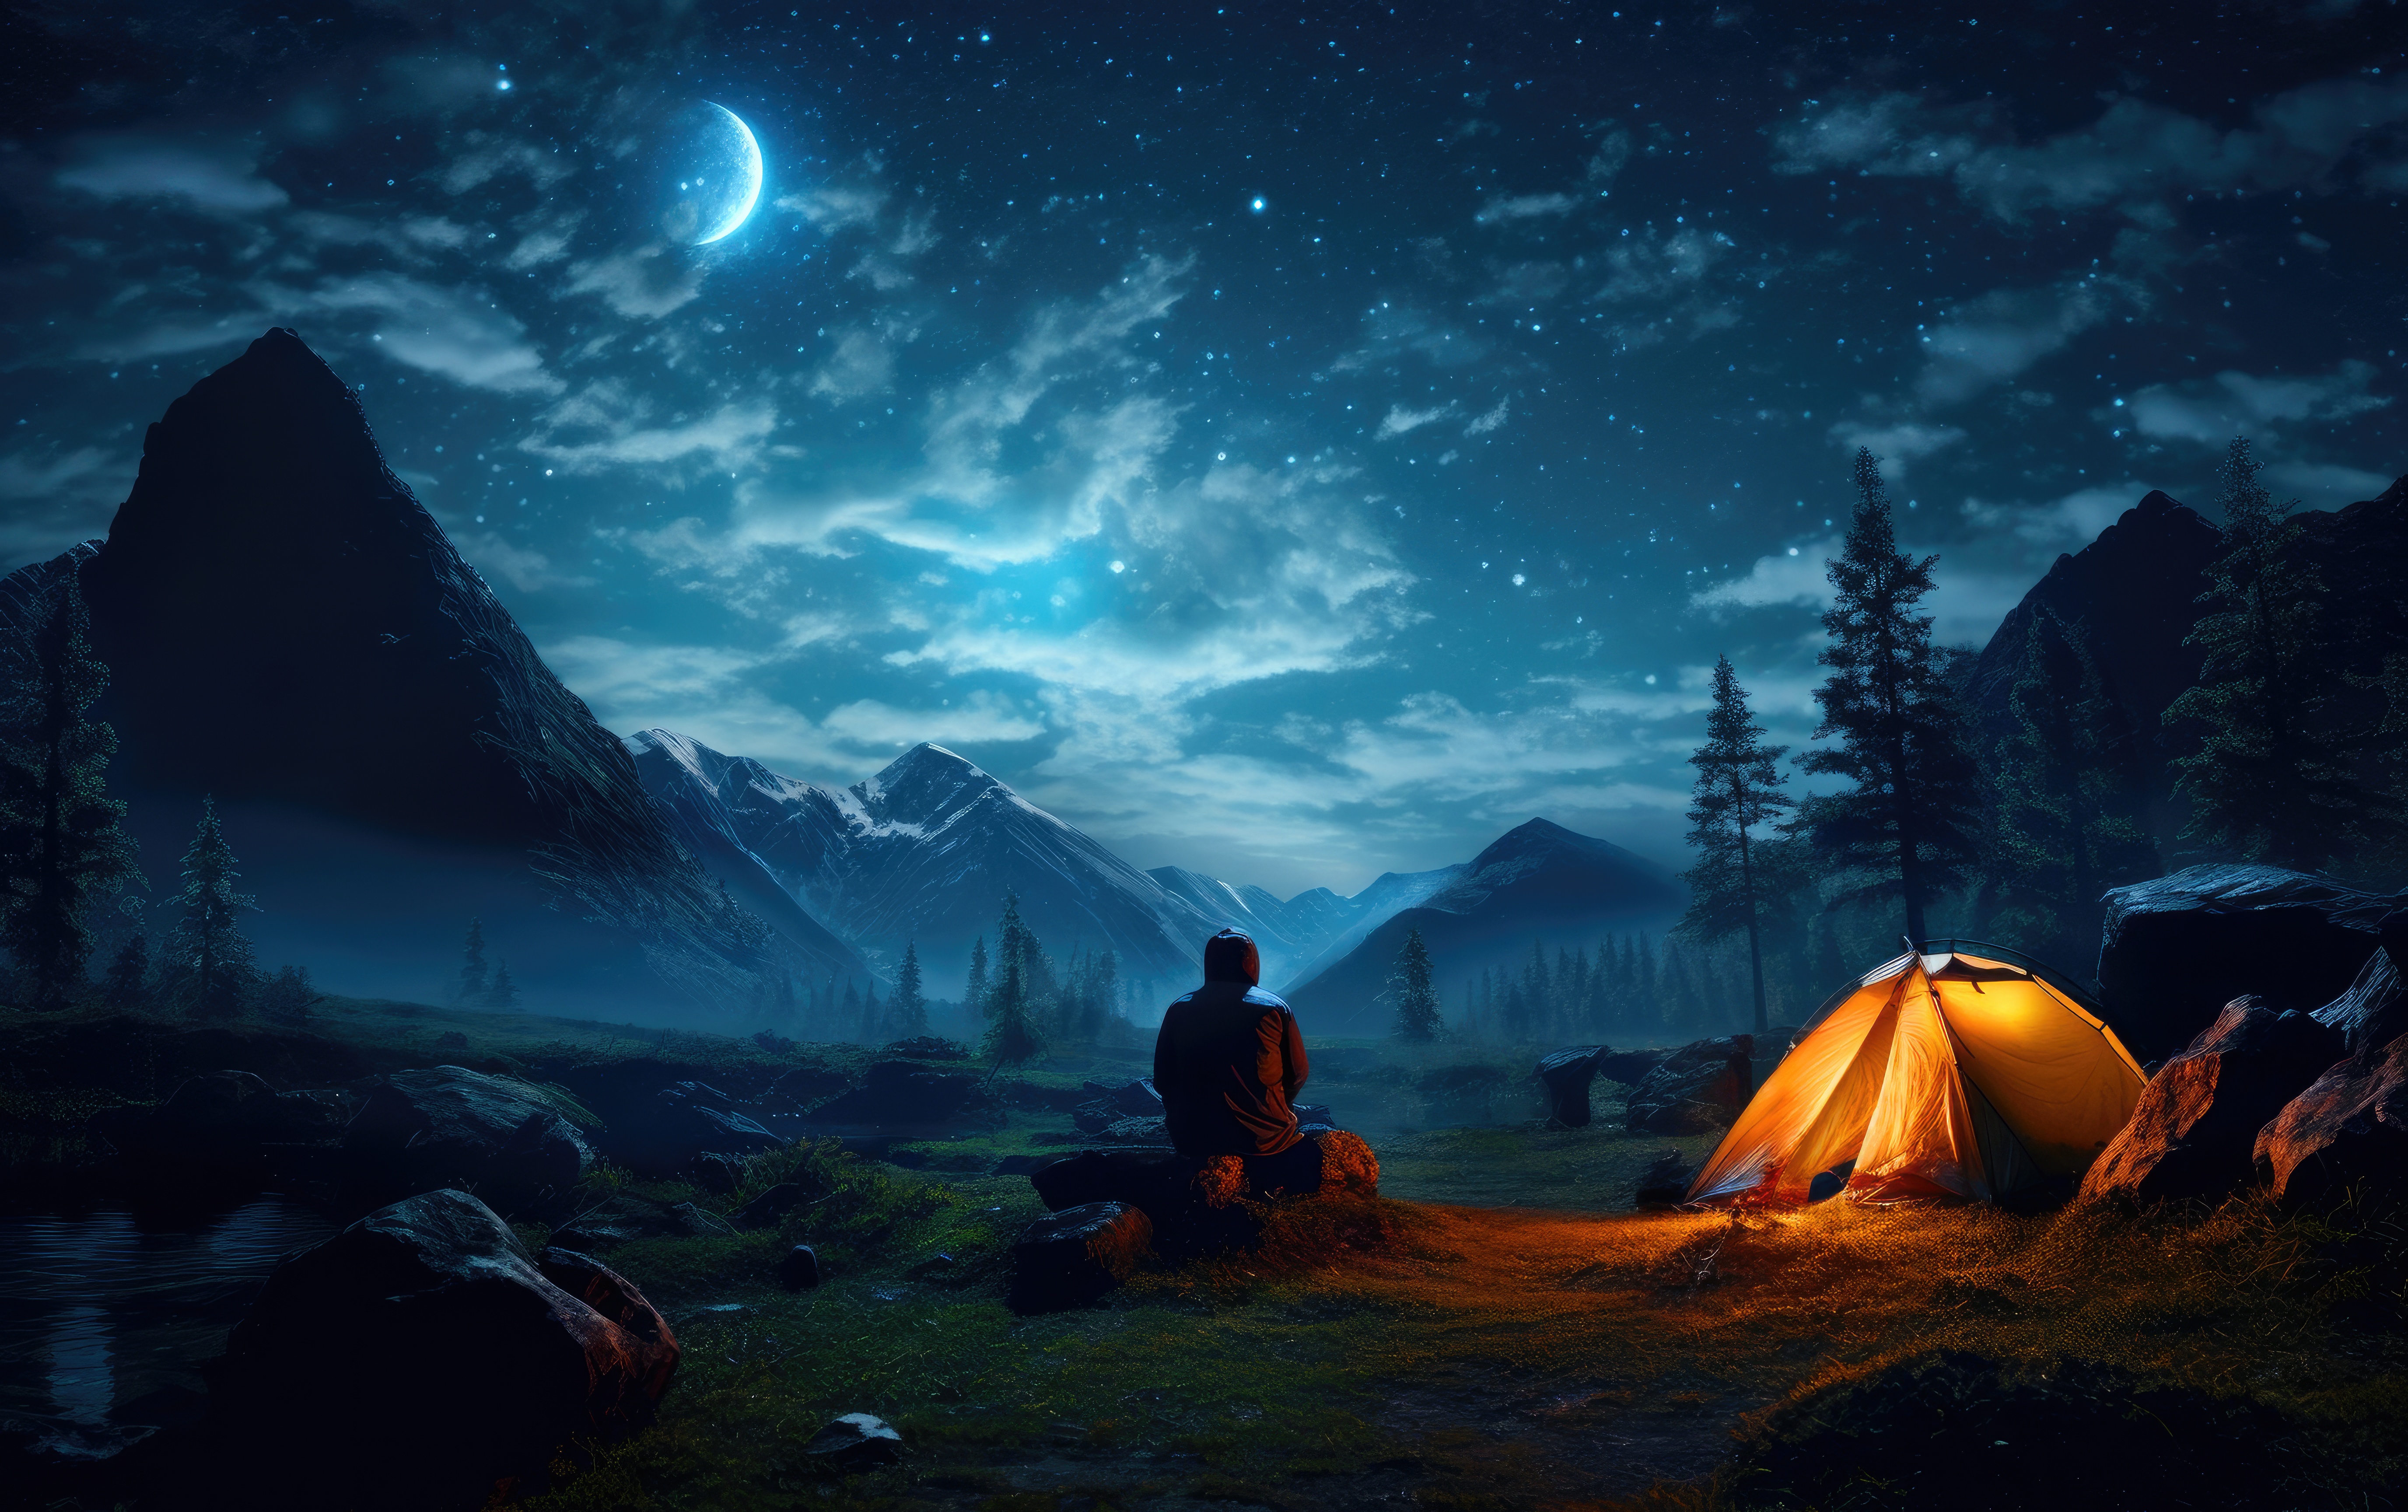 https://picjumbo.com/wp-content/uploads/man-camping-in-nature-and-watching-stars-free-photo.jpg